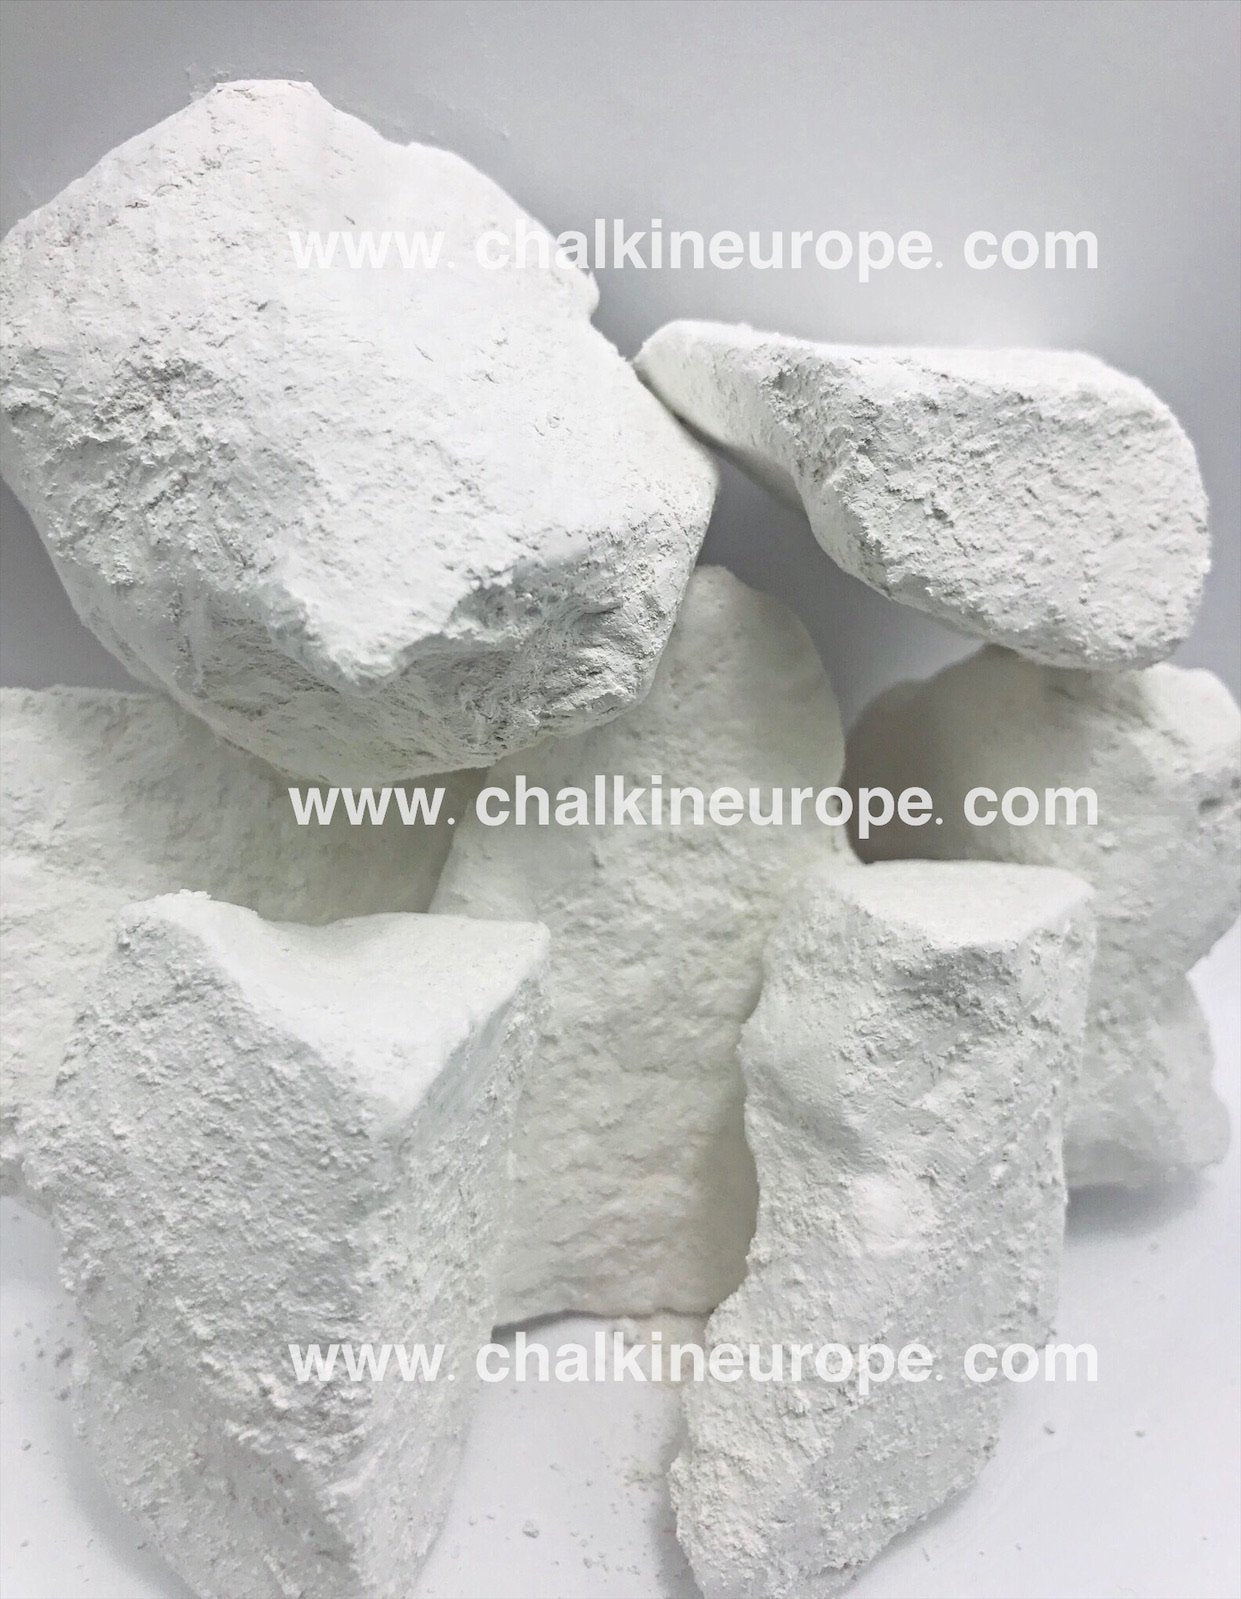 Crunchy Chalk Mix Edible Chalk